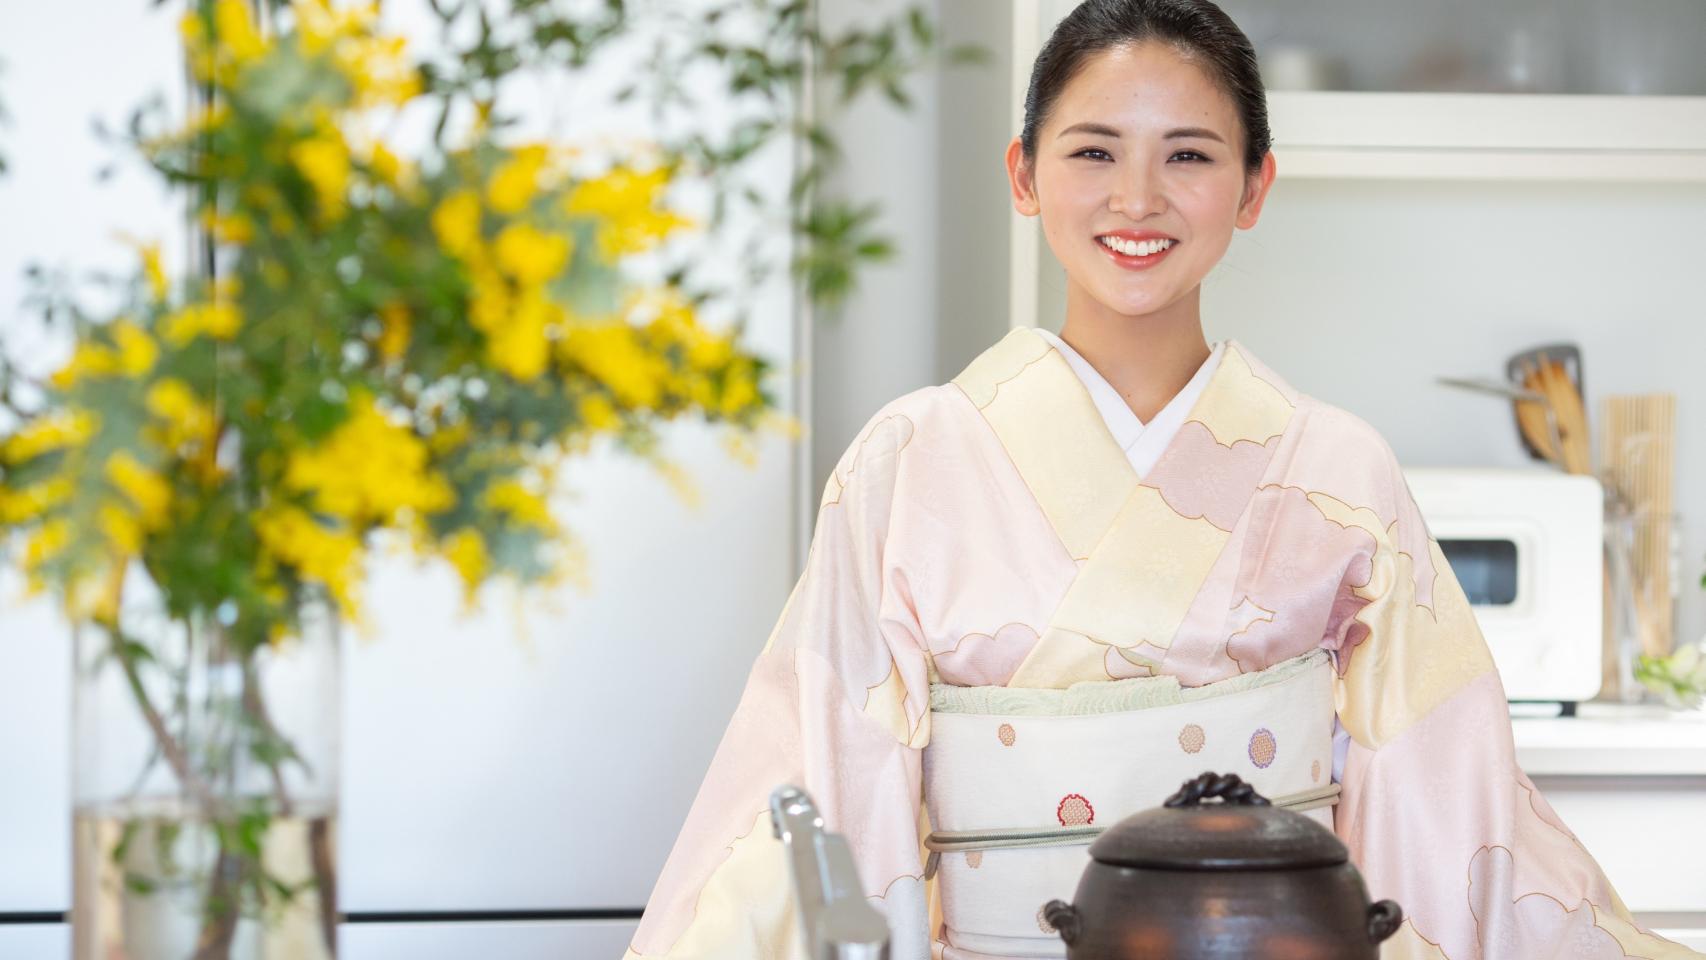 De geisha a youtuber la madre vestida con kimono que arrasa en las redes